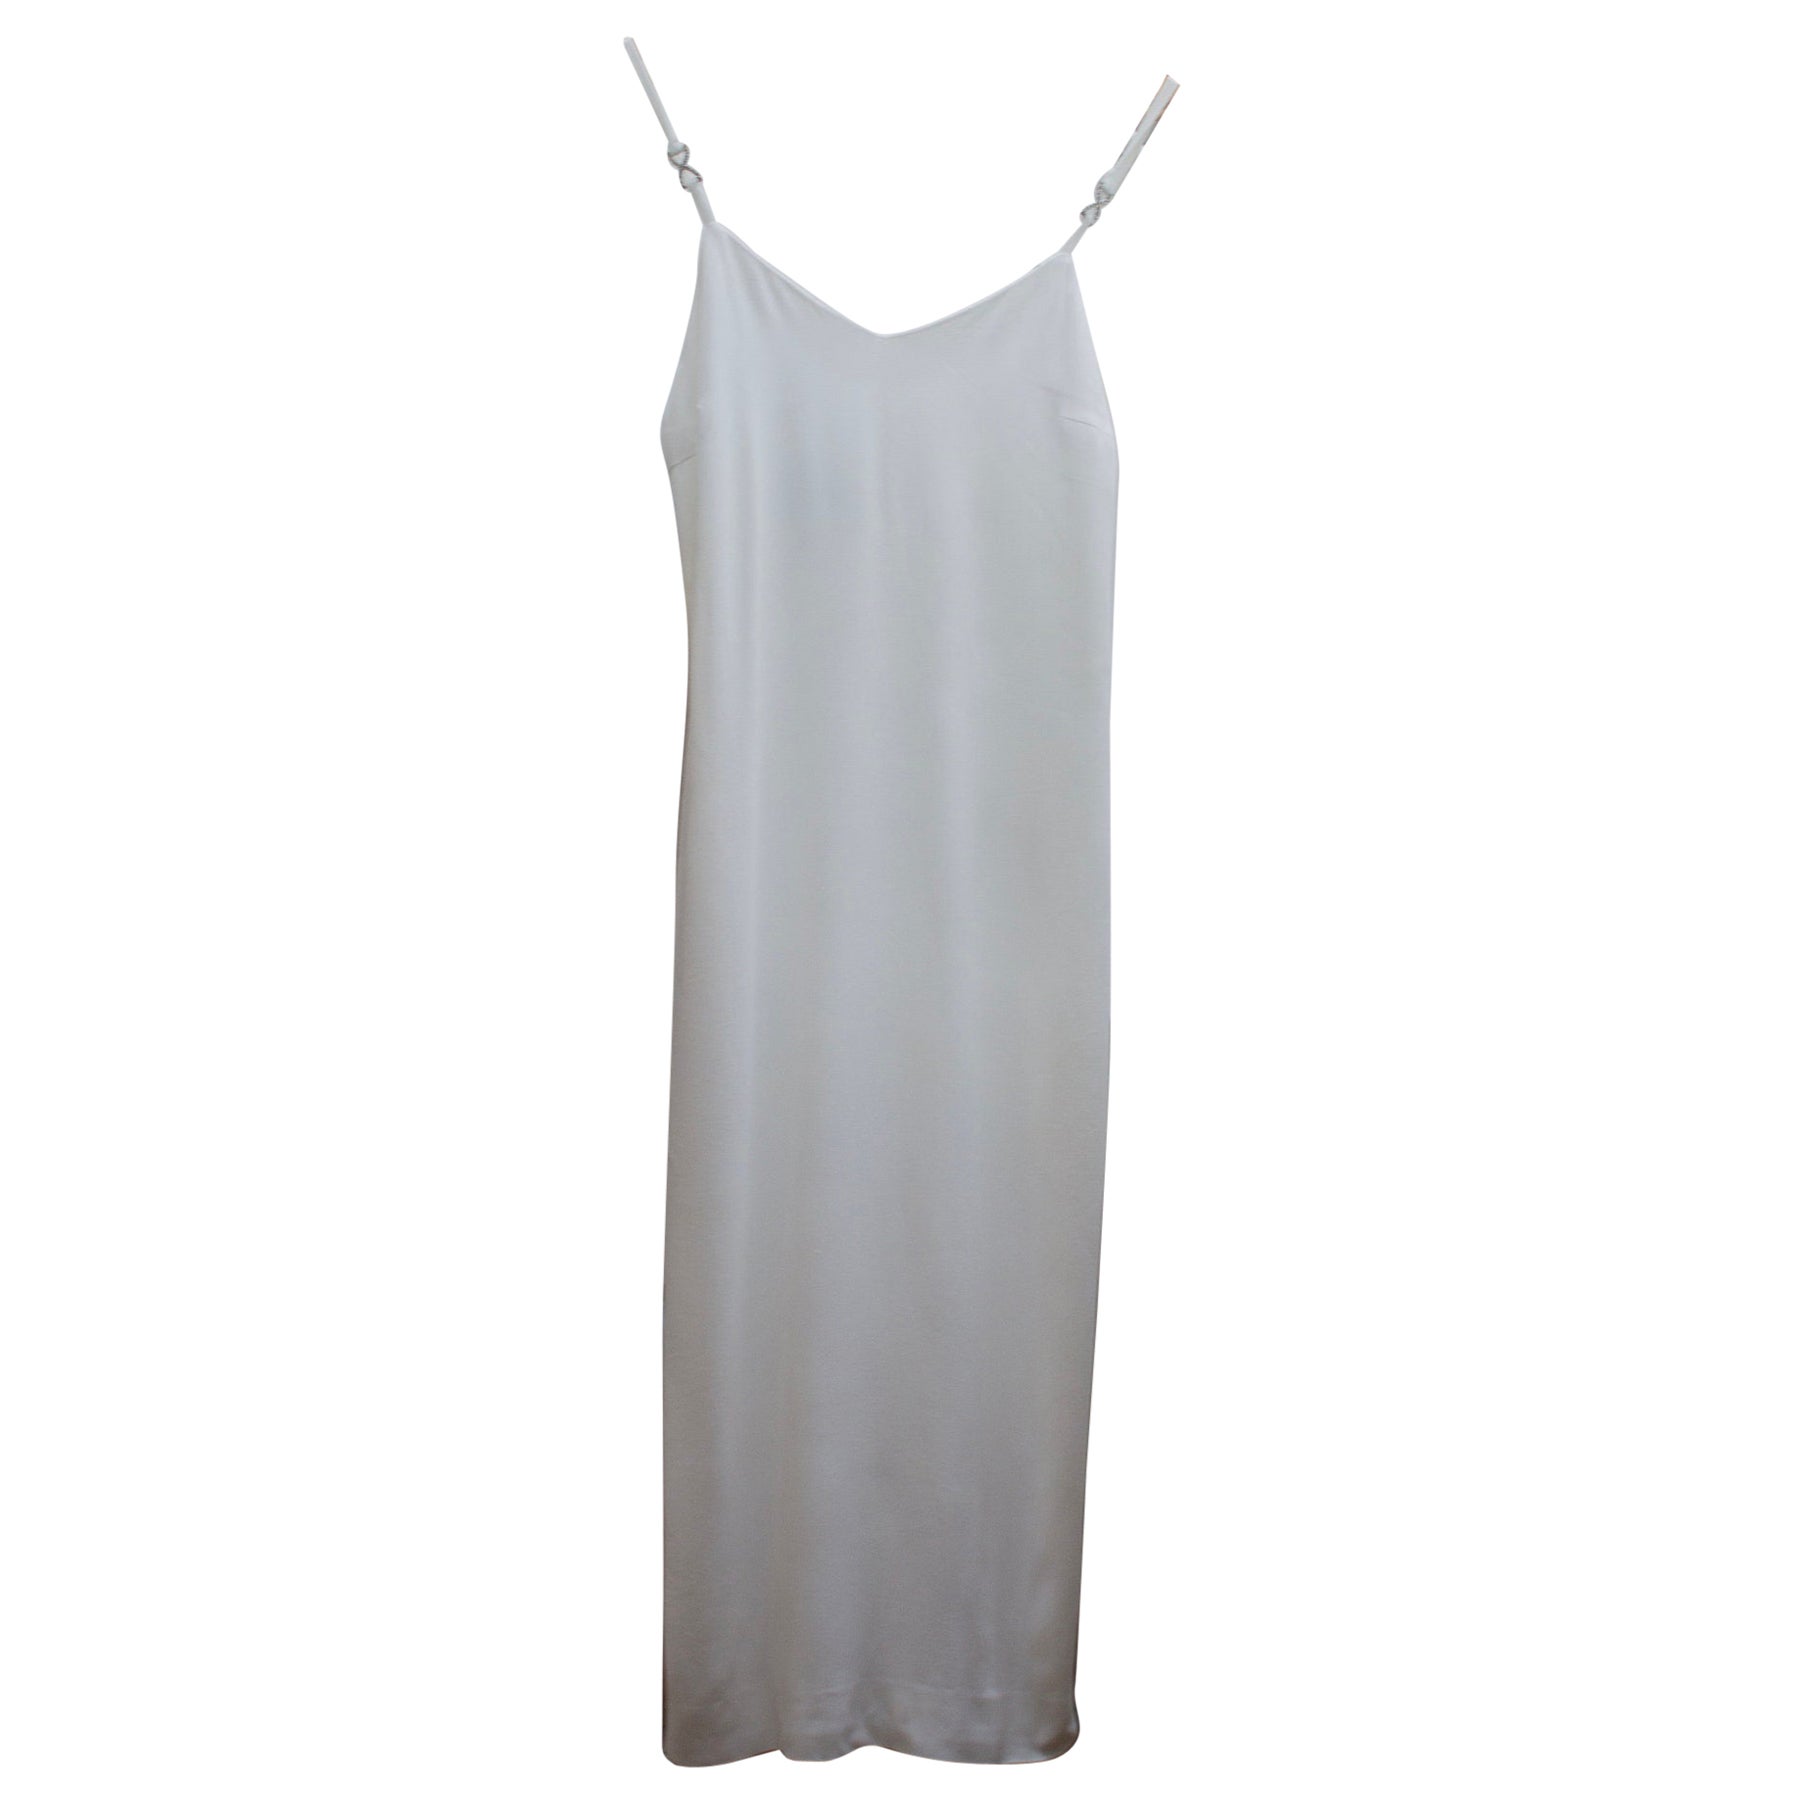 Versus by Gianni Versace Weißes Slip-Kleid aus den 90ern mit silbernen Strasssteinen an den Schultern 